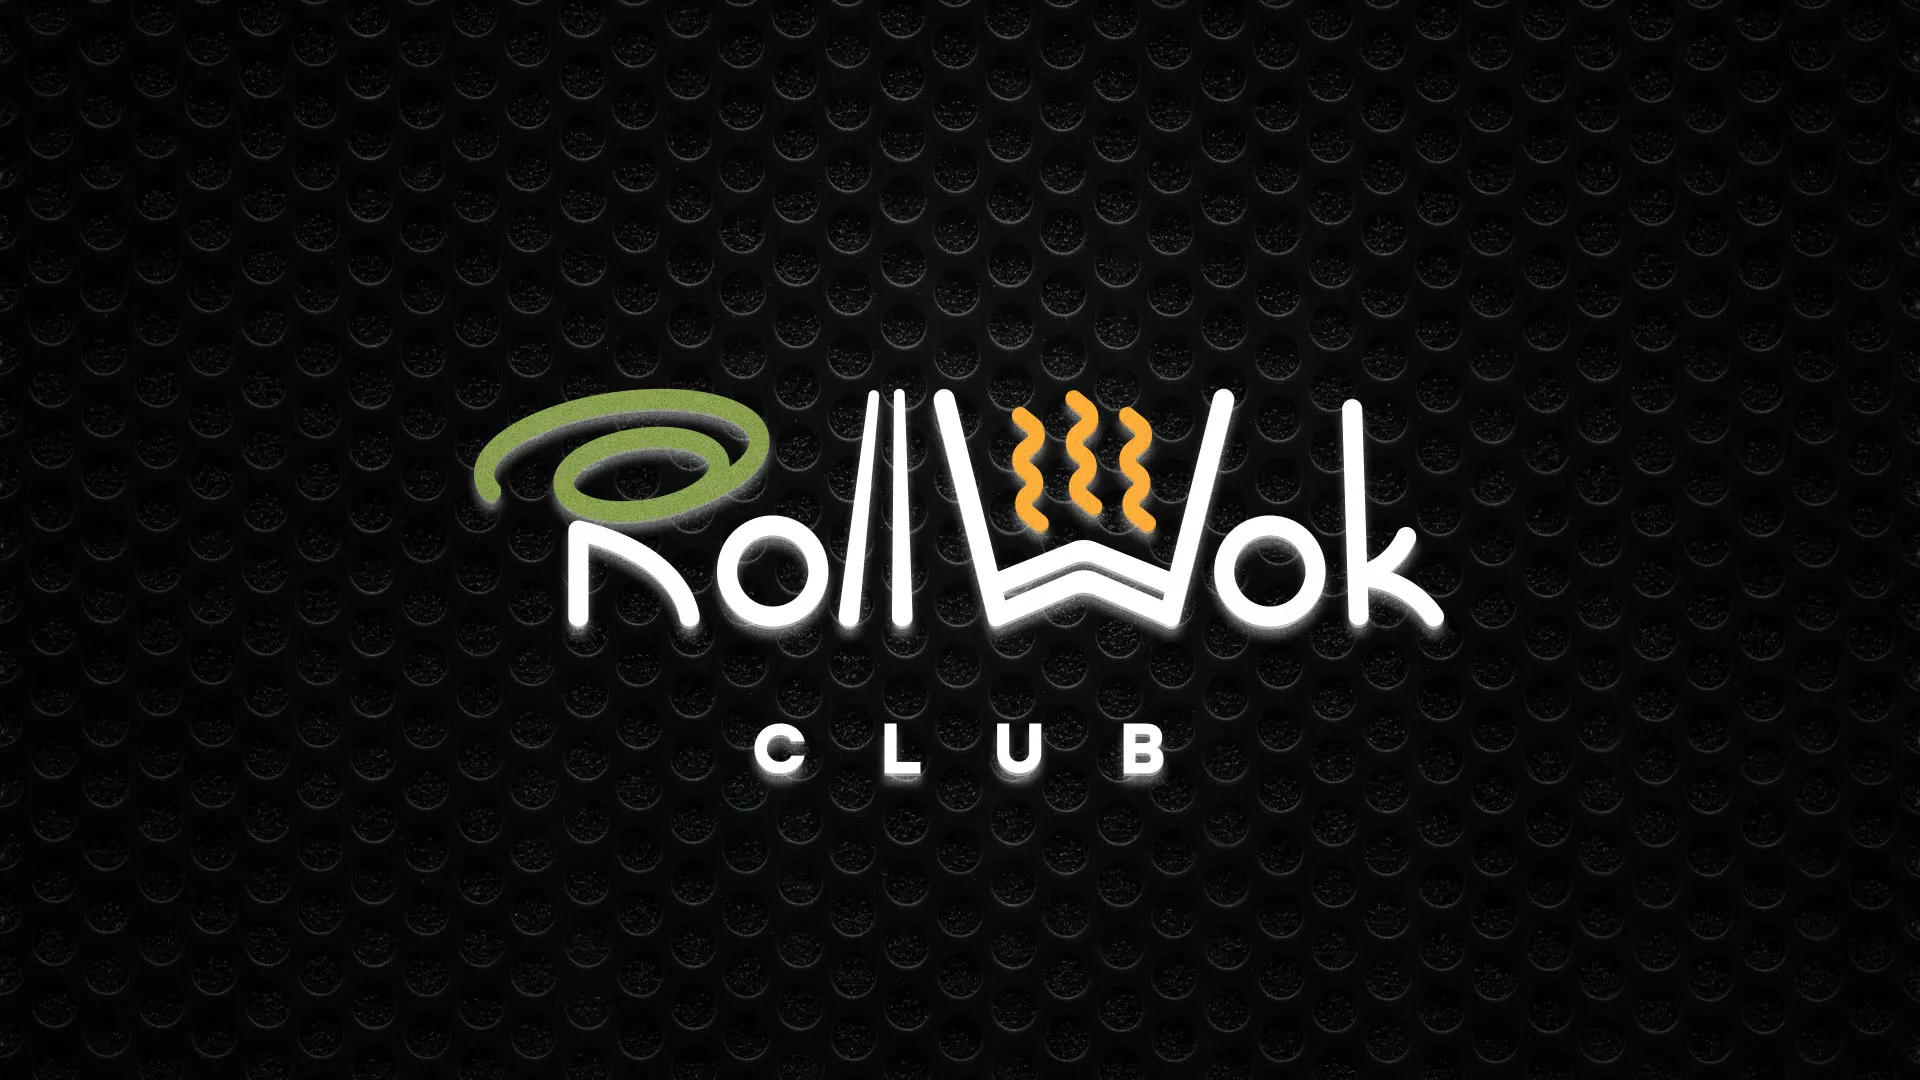 Брендирование торговых точек суши-бара «Roll Wok Club» в Ишимбае